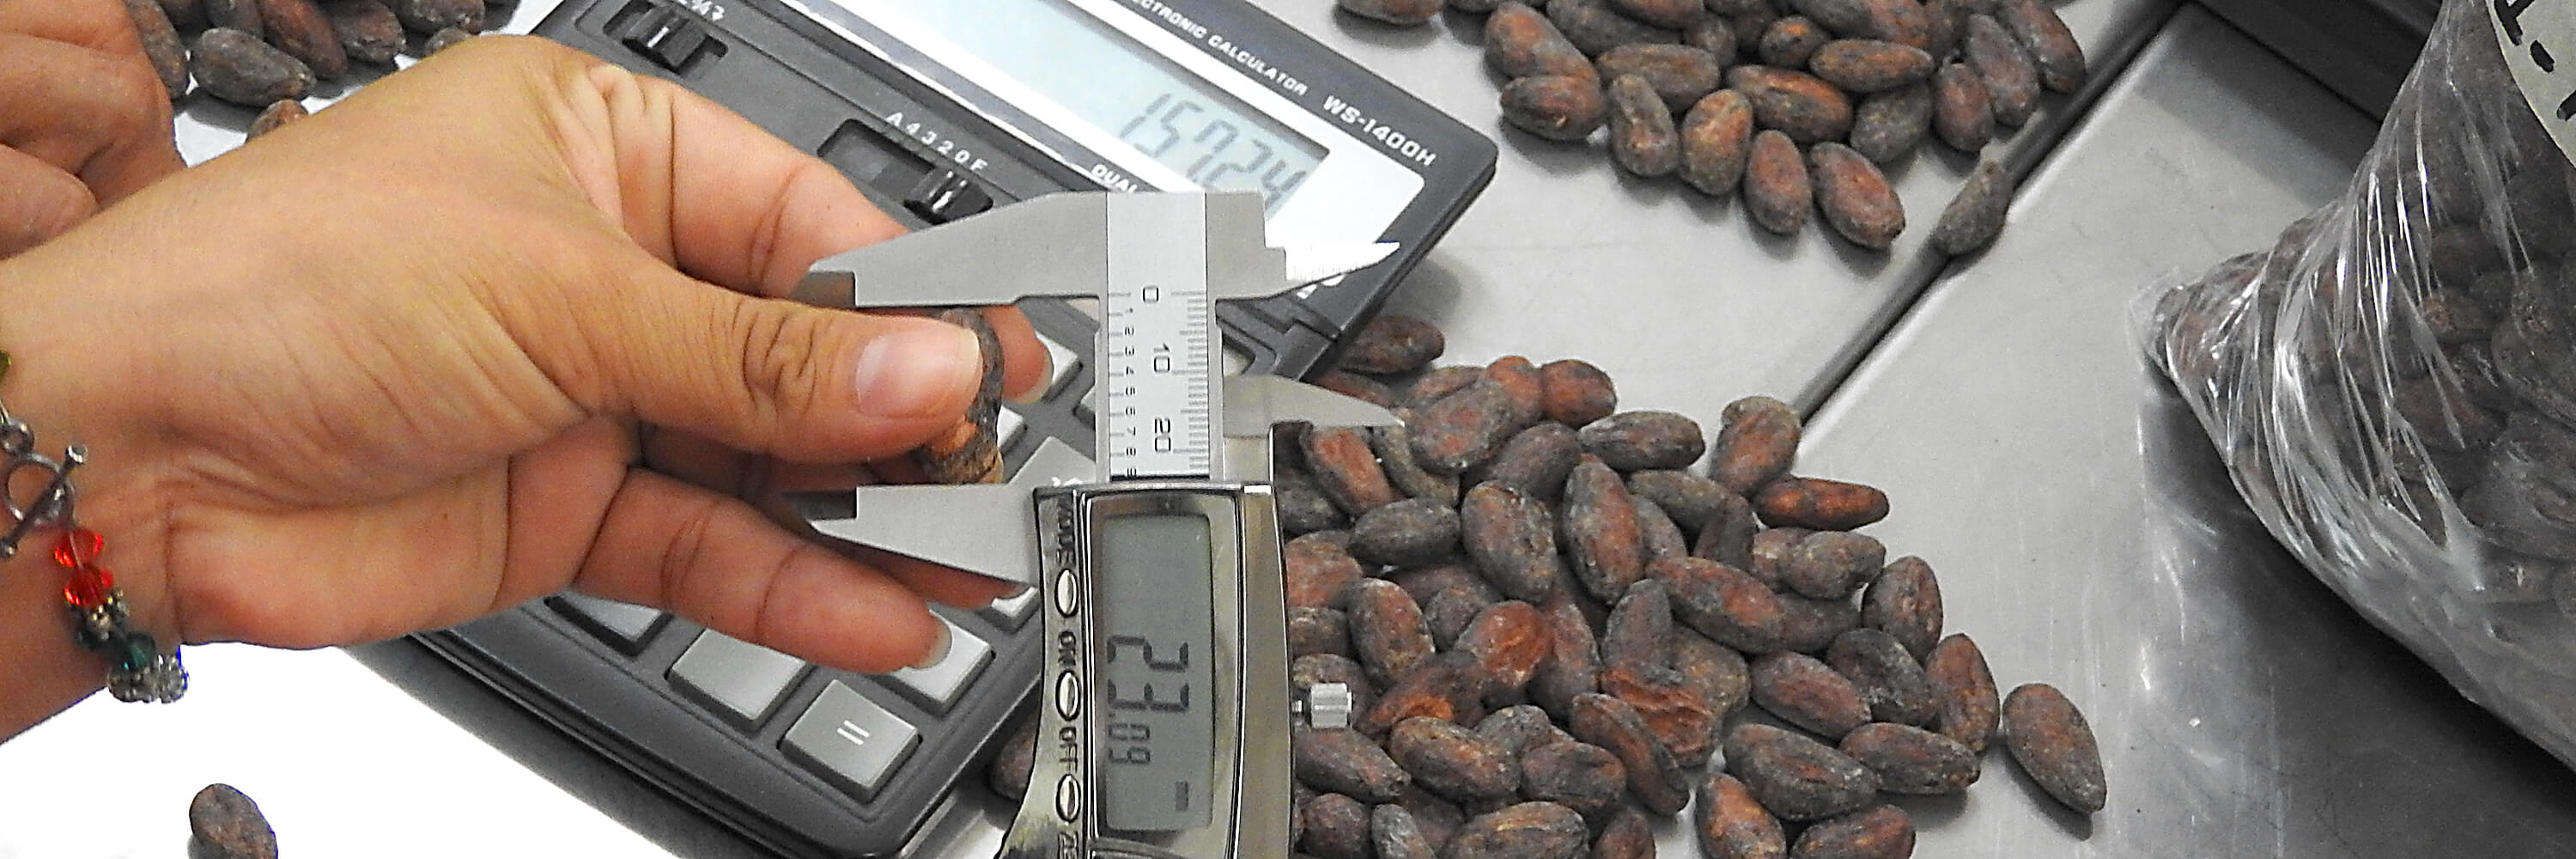 Toma de medidas del grano de cacao